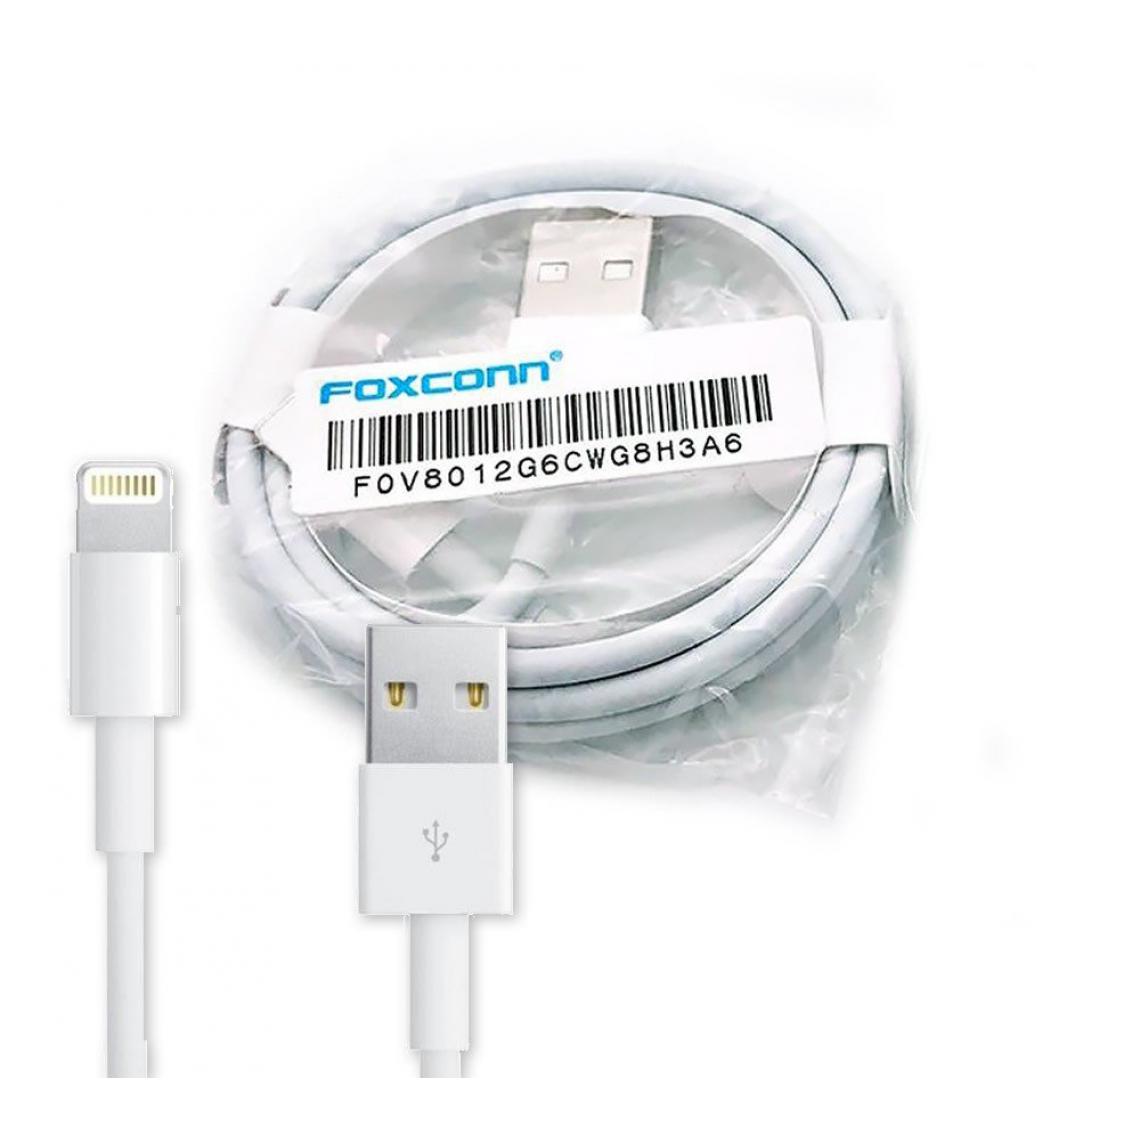 Phonecare - Cable 100cm pour Iphone 6s Lighting Foxconn Certificat MFI - Autres accessoires smartphone